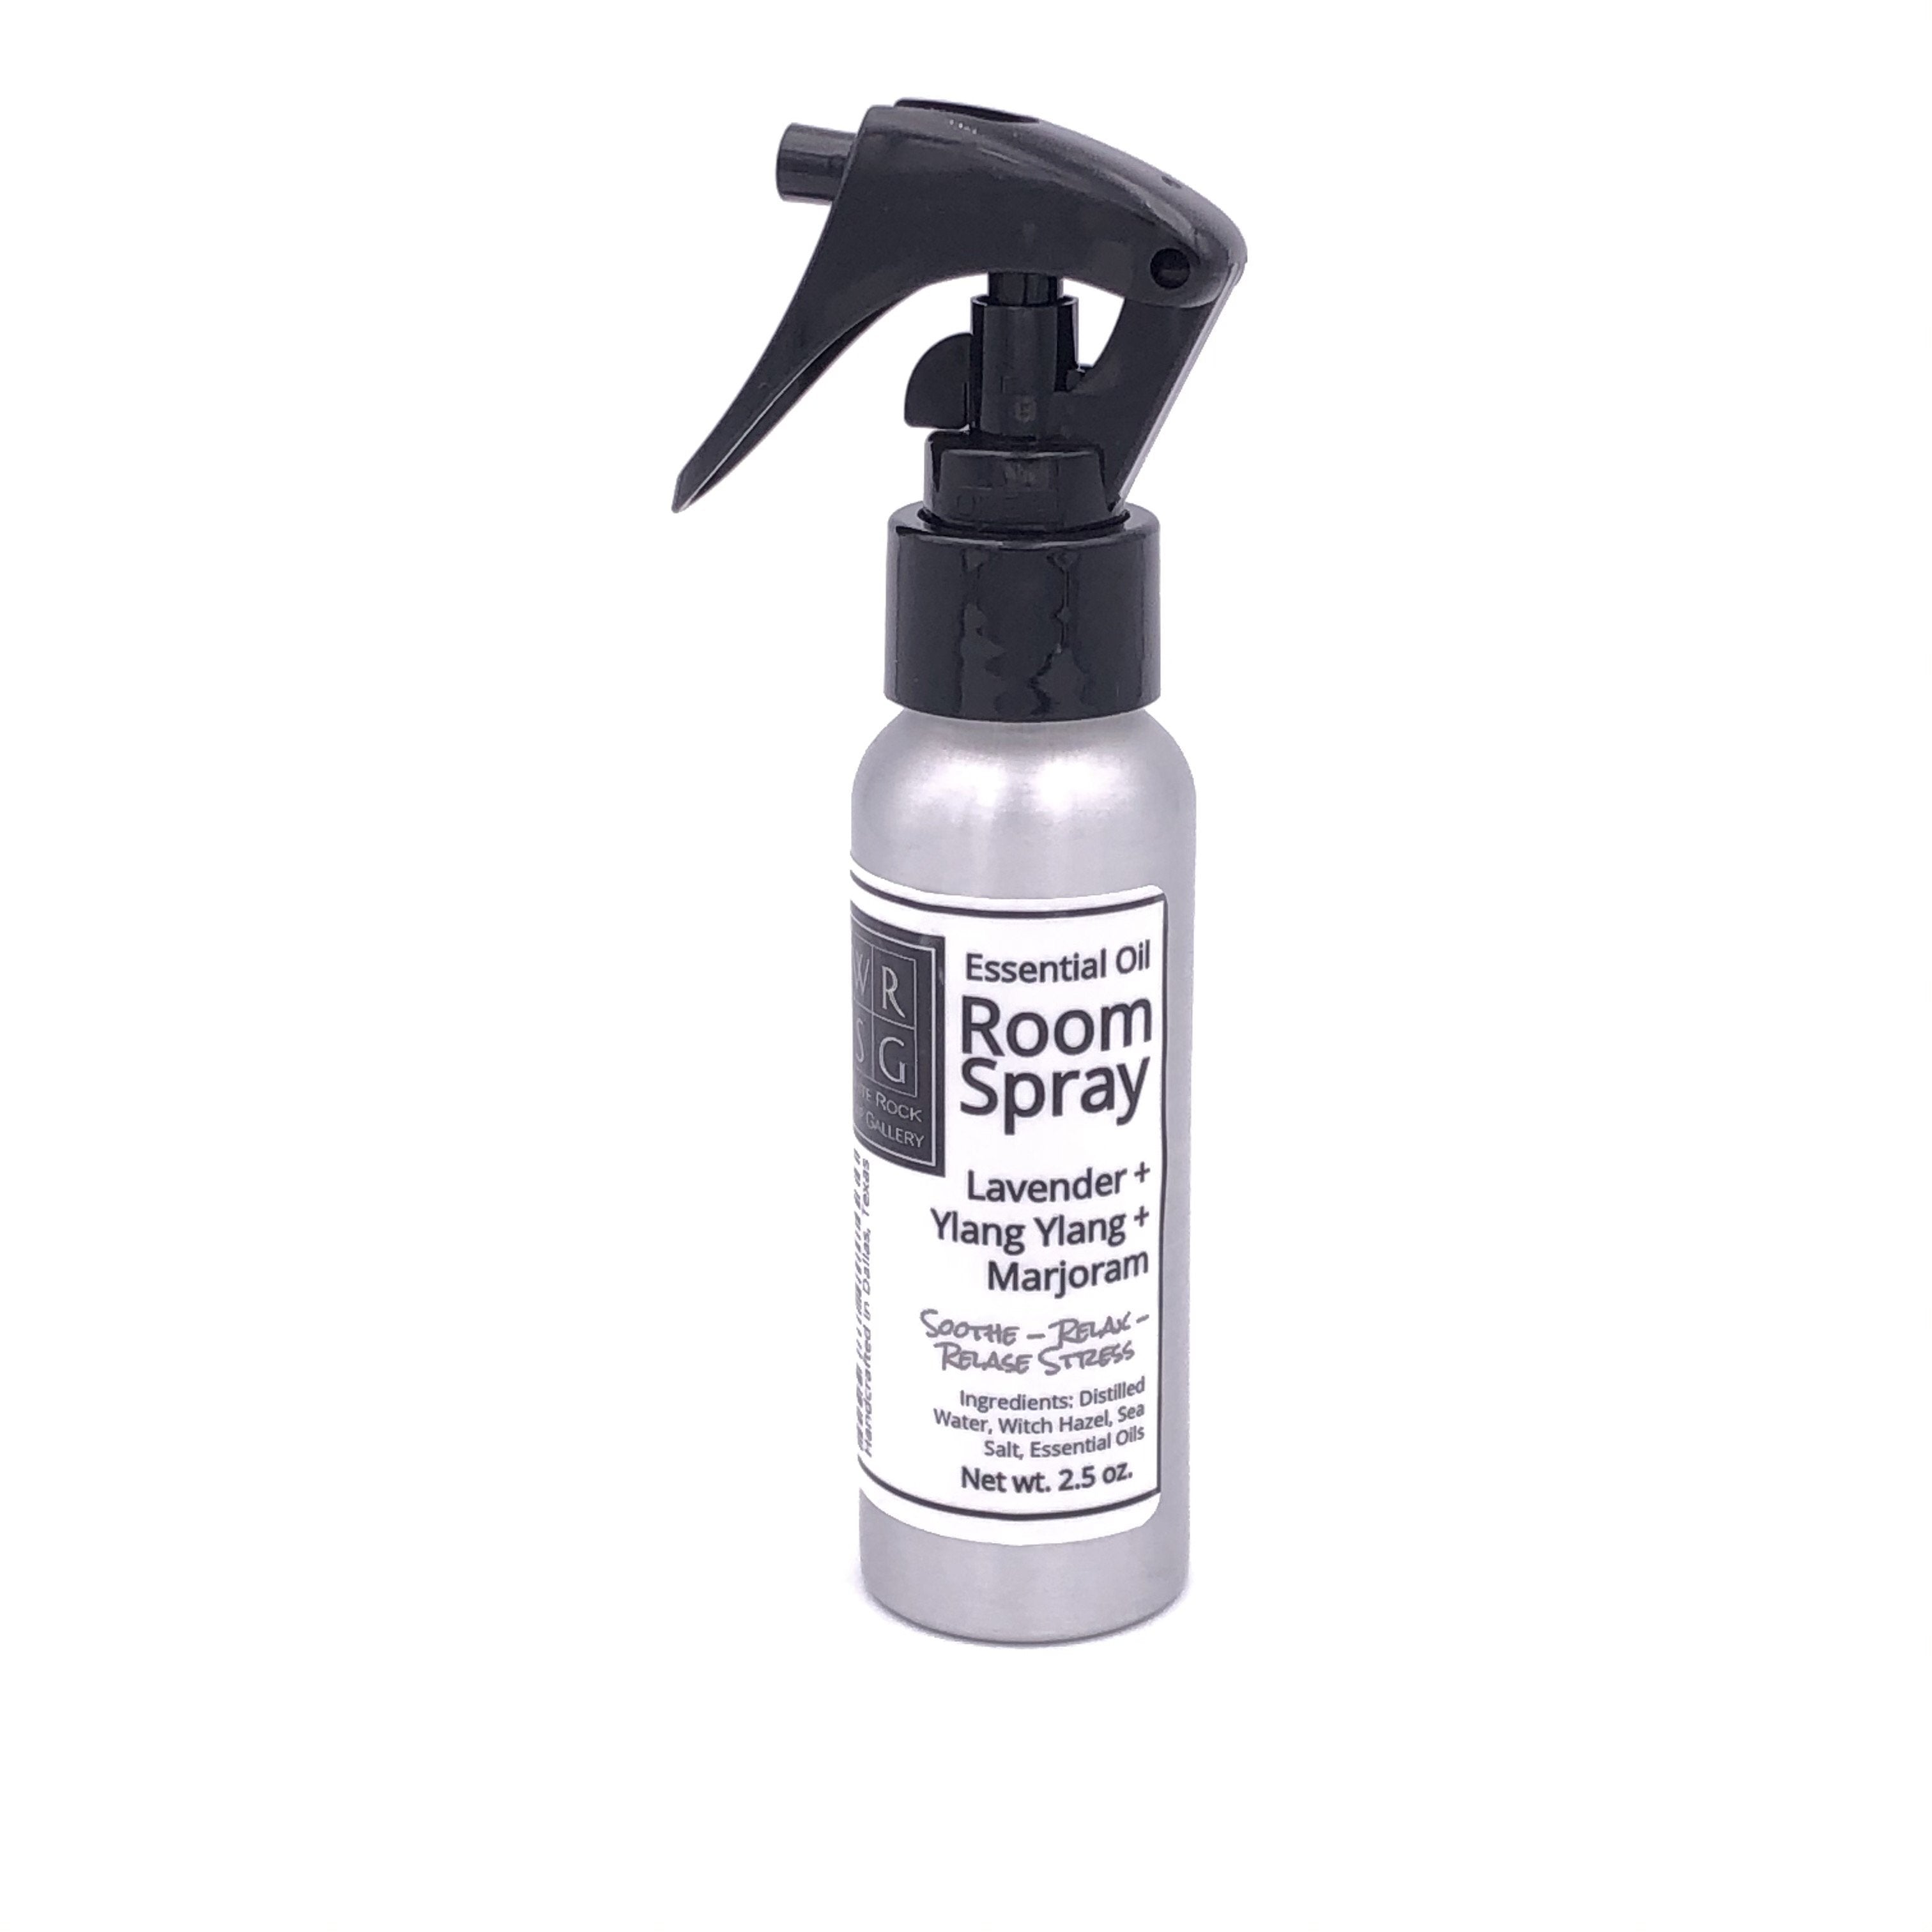 Spray de aceite esencial para habitaciones